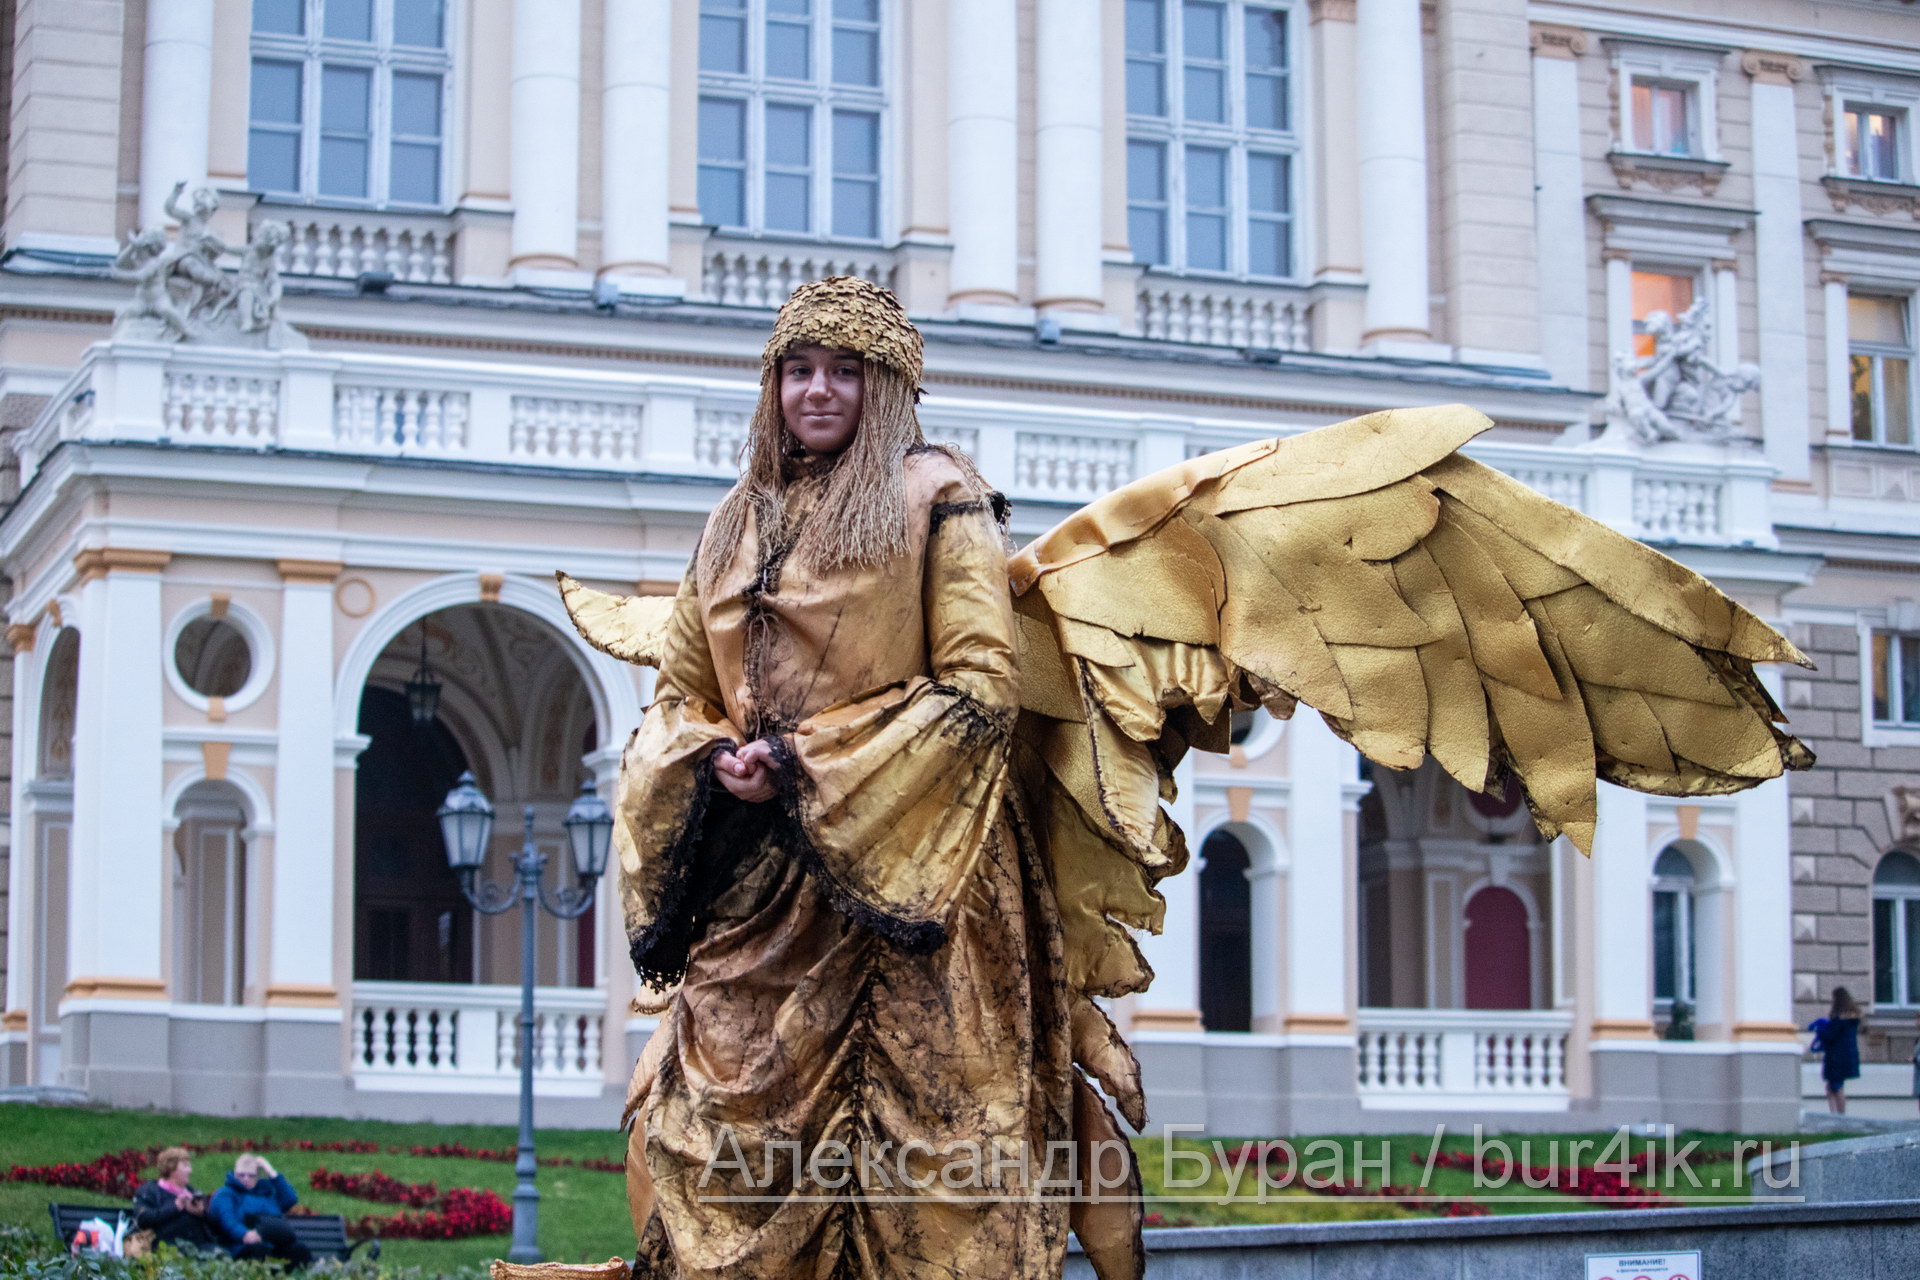 Молодая девушка в золотом костюме ангела предлагает с ней сфотографироваться за деньги - Украина, Одесса, 09,11,2019